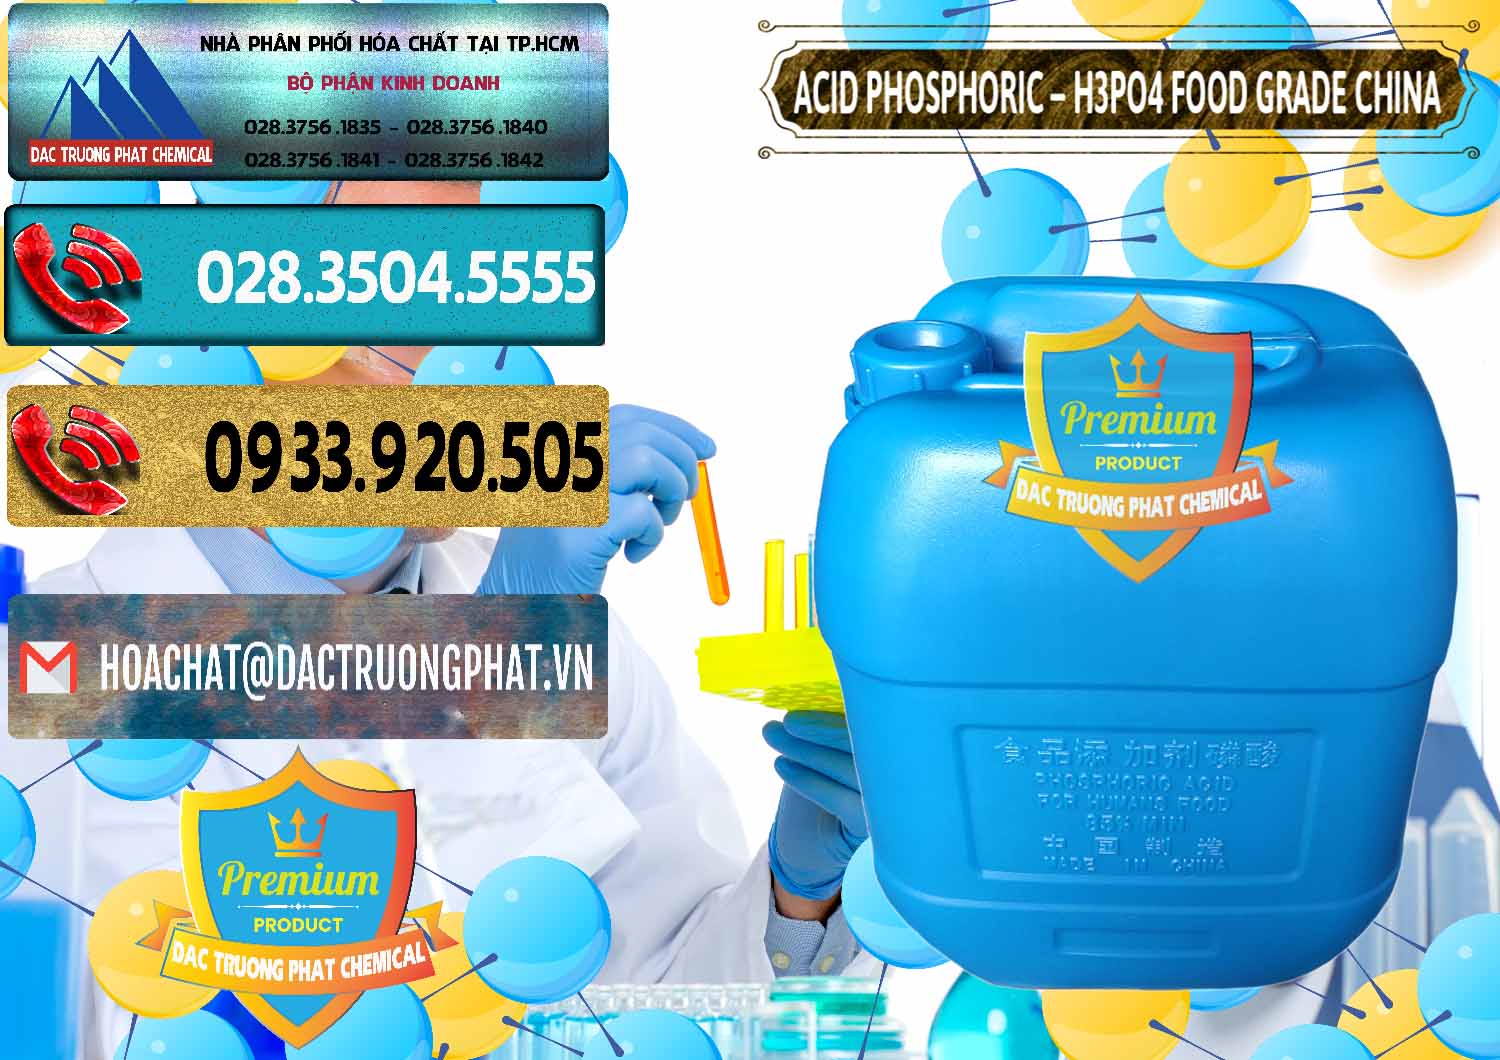 Nơi cung cấp & bán Acid Phosphoric – H3PO4 85% Food Grade Trung Quốc China - 0015 - Công ty chuyên nhập khẩu ( cung cấp ) hóa chất tại TP.HCM - hoachatdetnhuom.com